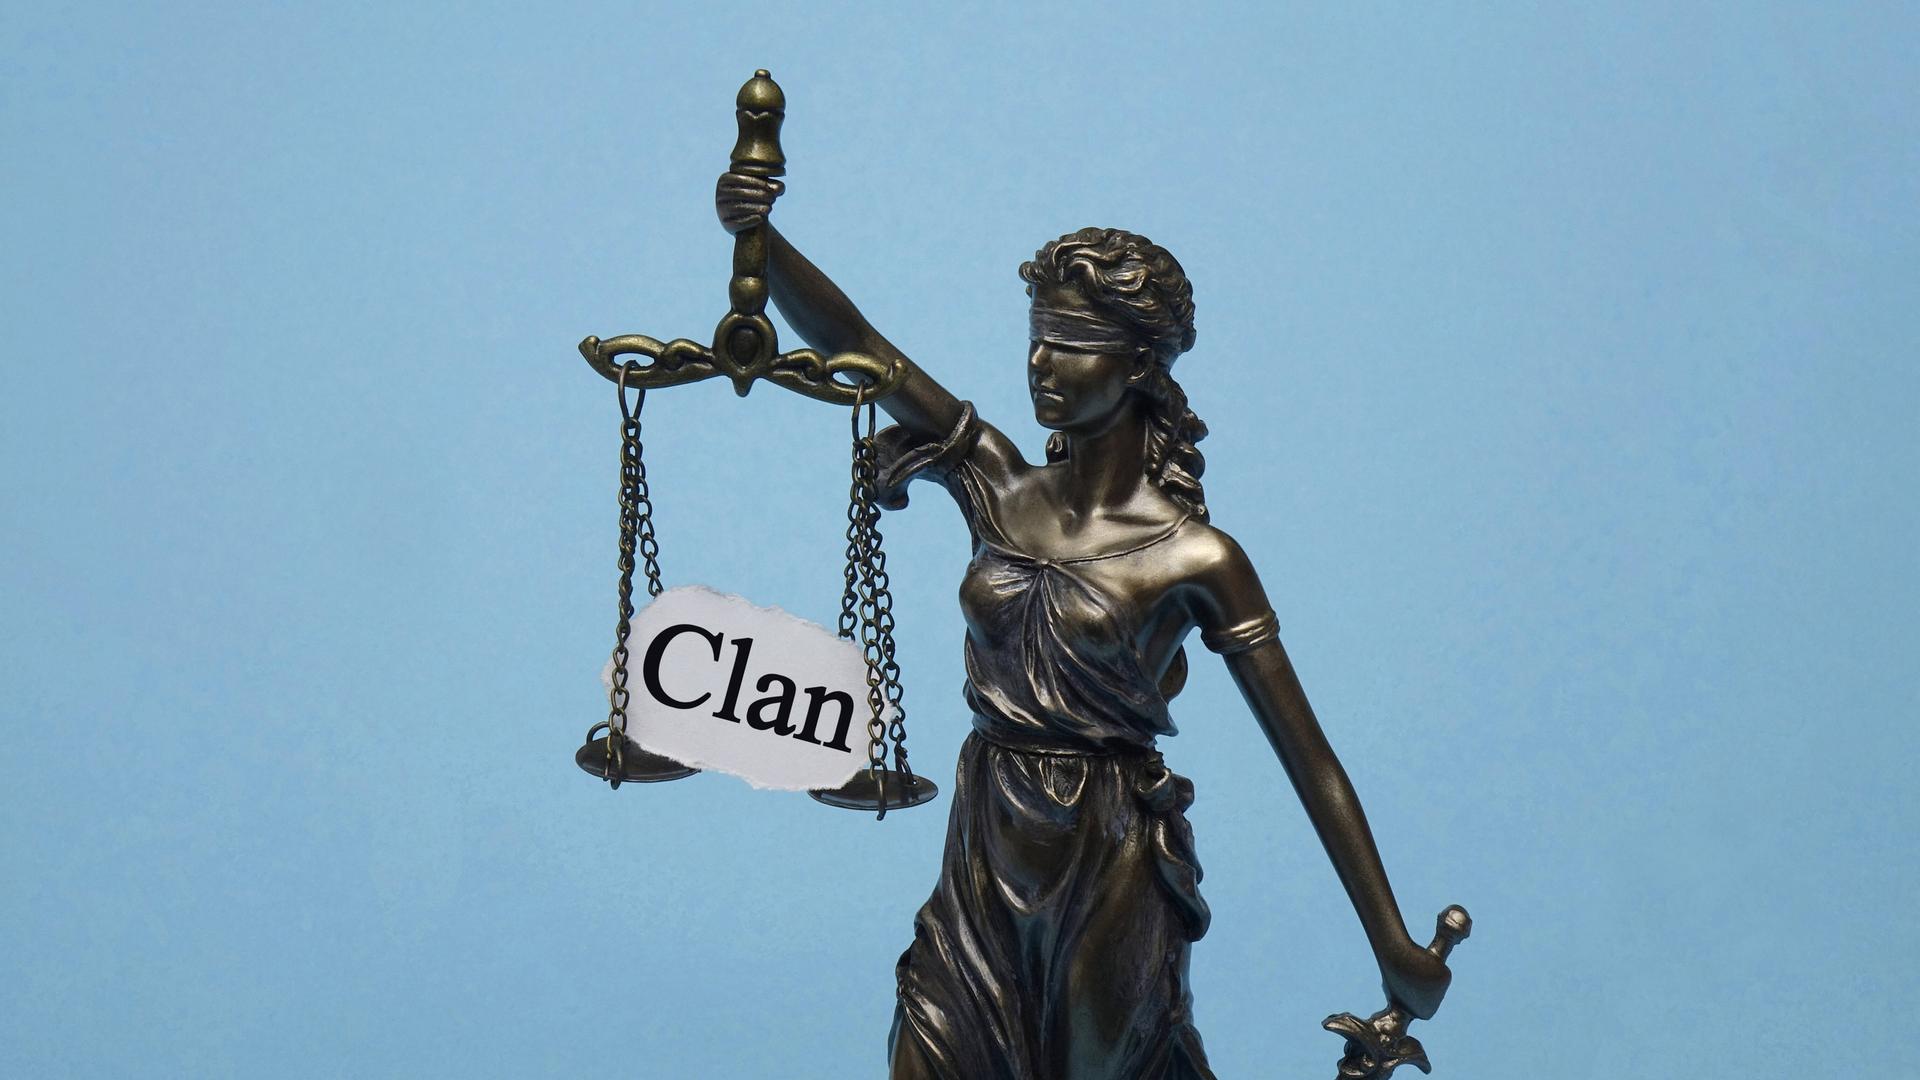 Justitia hält ihre Waage, auf der ein Papier liegt mit dem Wort "Clan" 